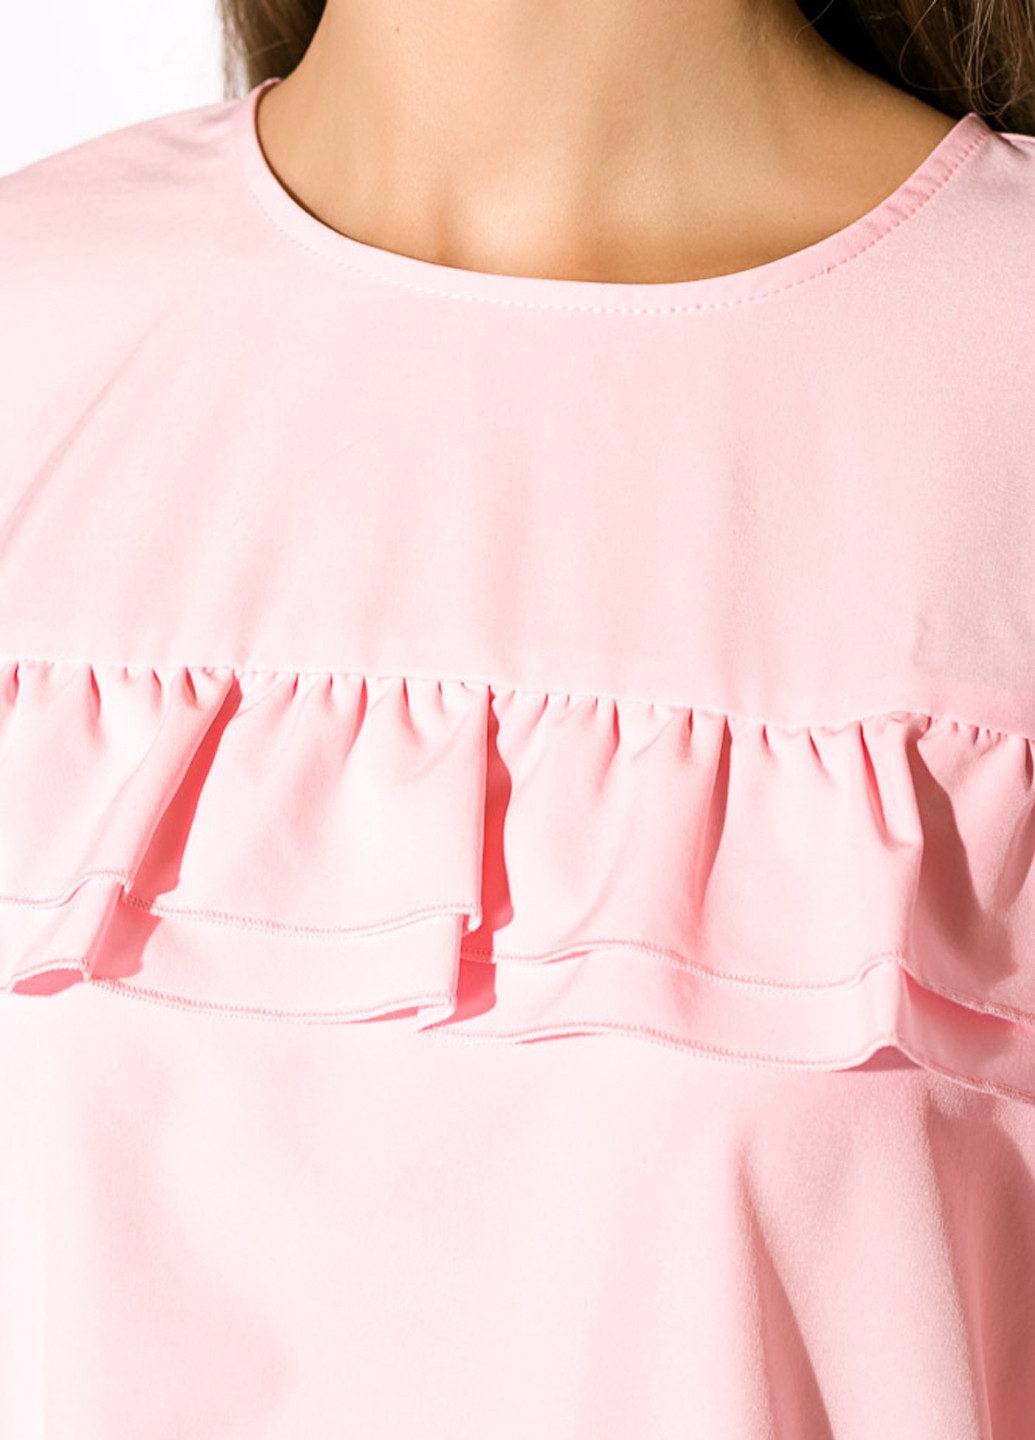 Светло-розовая демисезонная блуза Time of Style